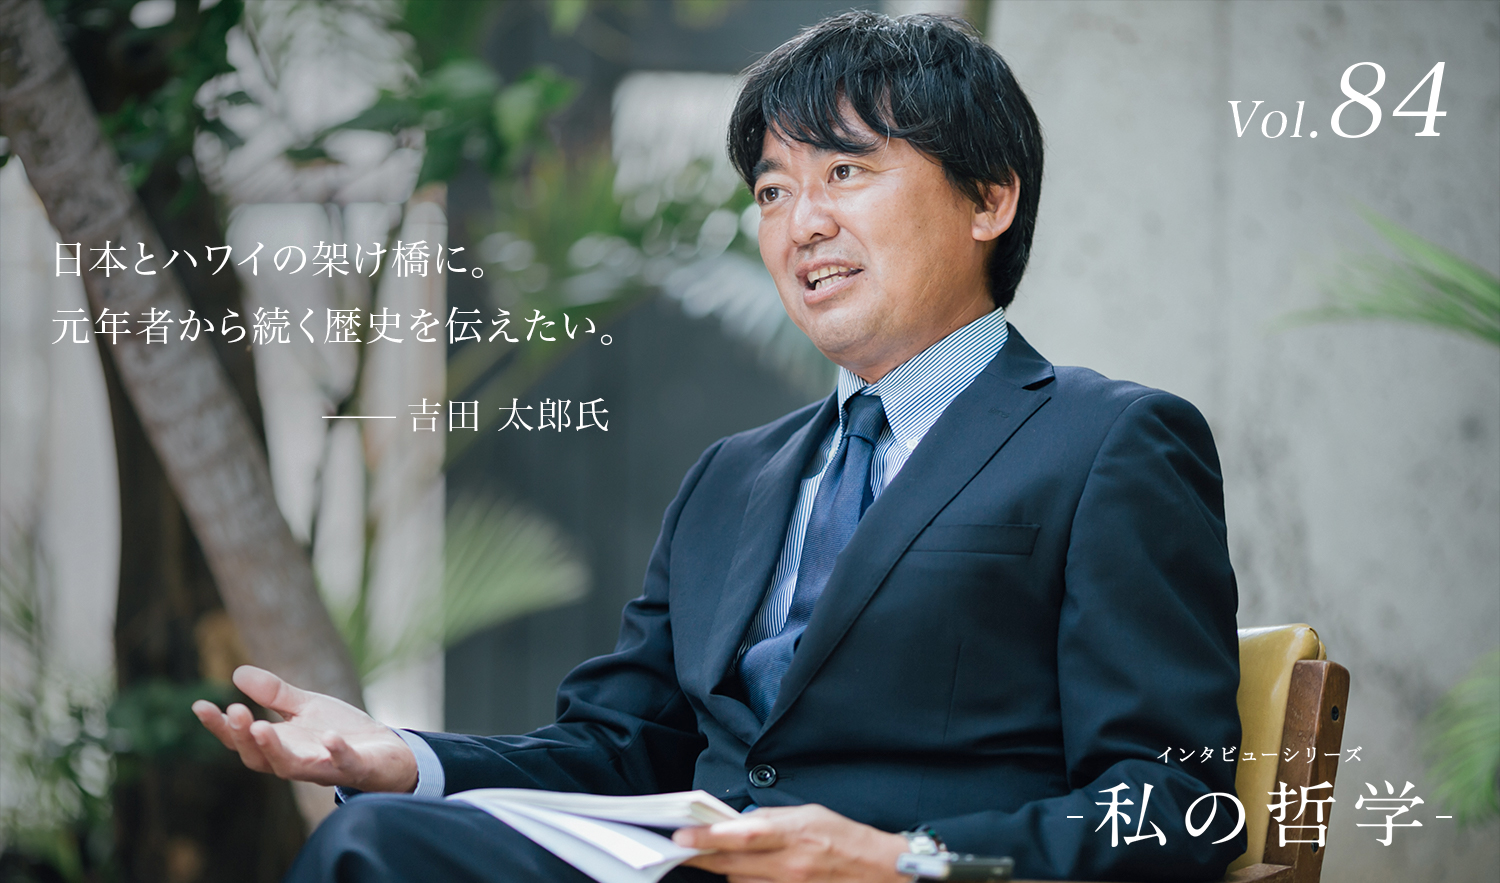 『私の哲学』第84回 株式会社 ハワイ報知社社長 吉田 太郎氏を公開しました